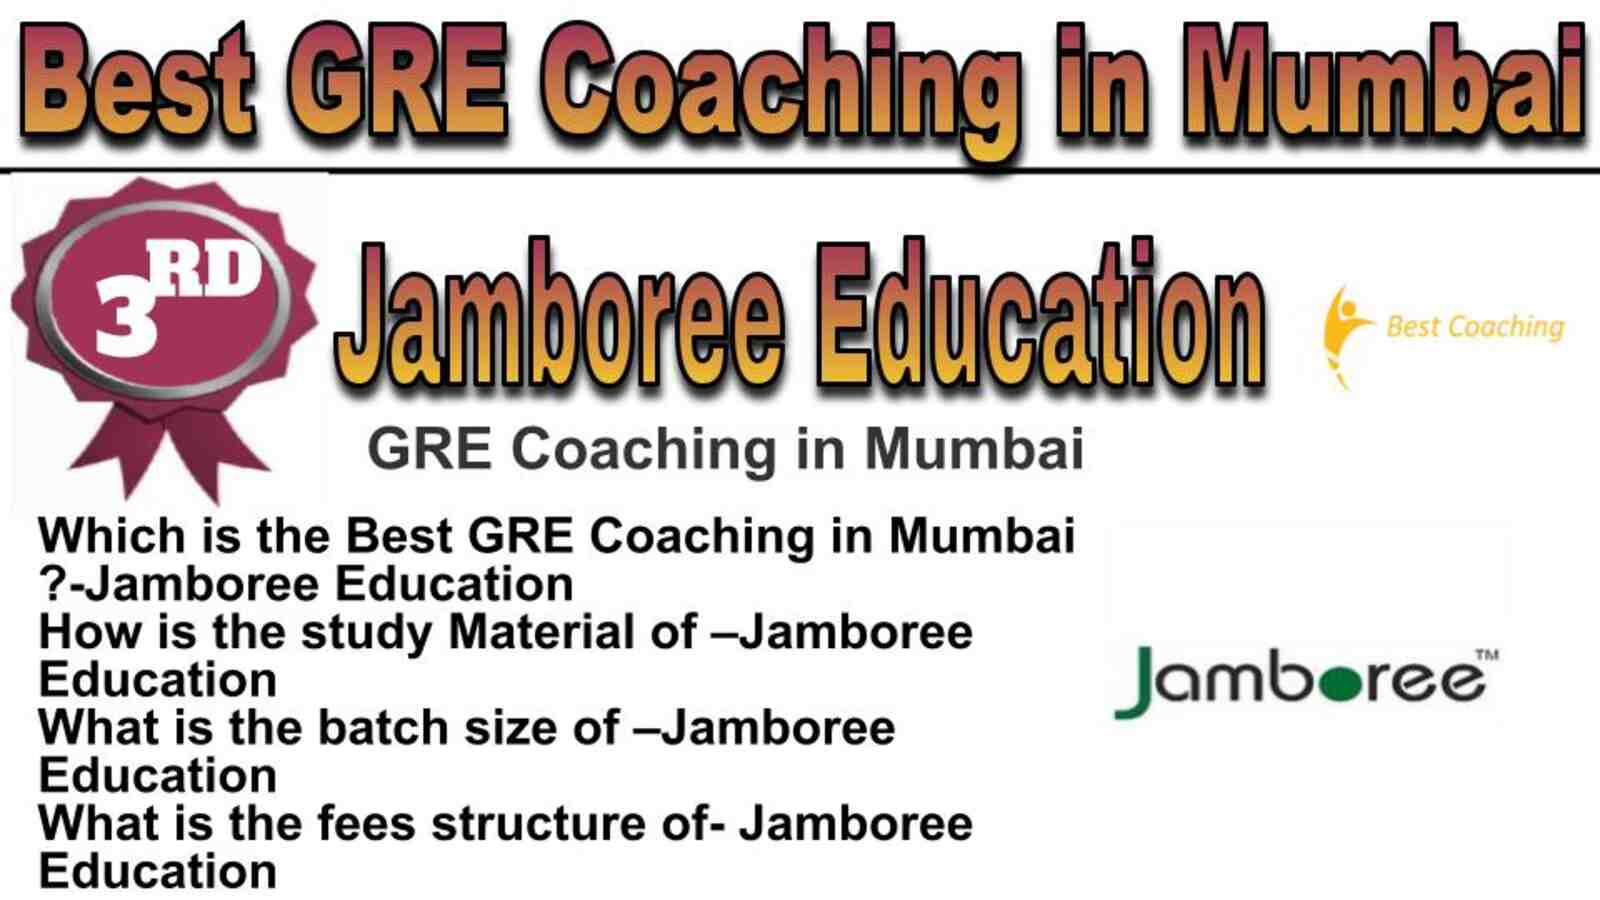 Rank 3 best GRE coaching in Mumbai